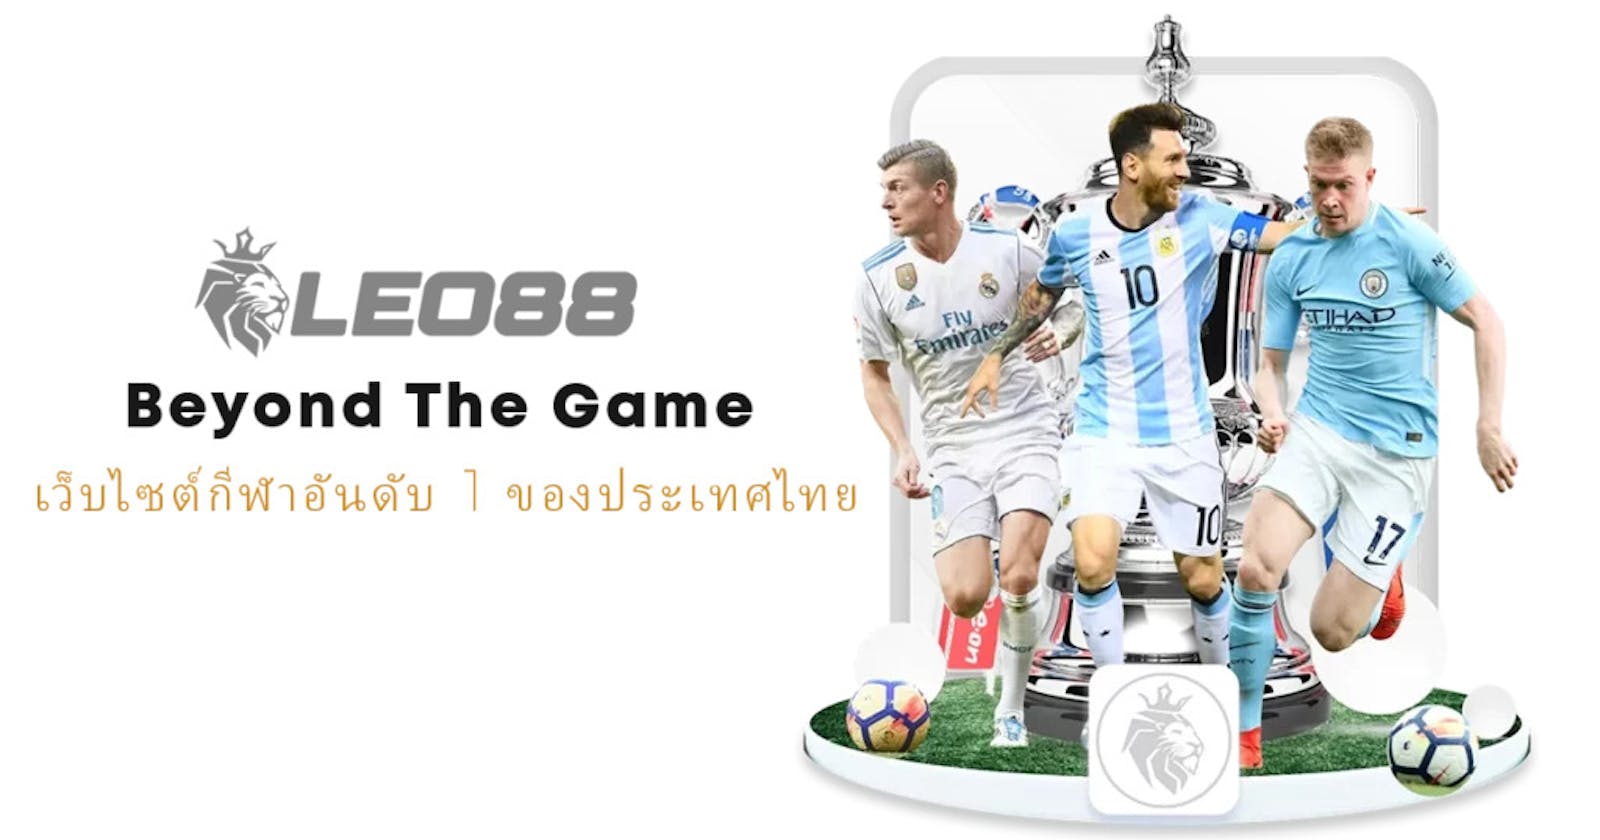 Leo88 เว็บเดิมพันกีฬาออนไลน์ ที่ดีที่สุดในเอเชีย